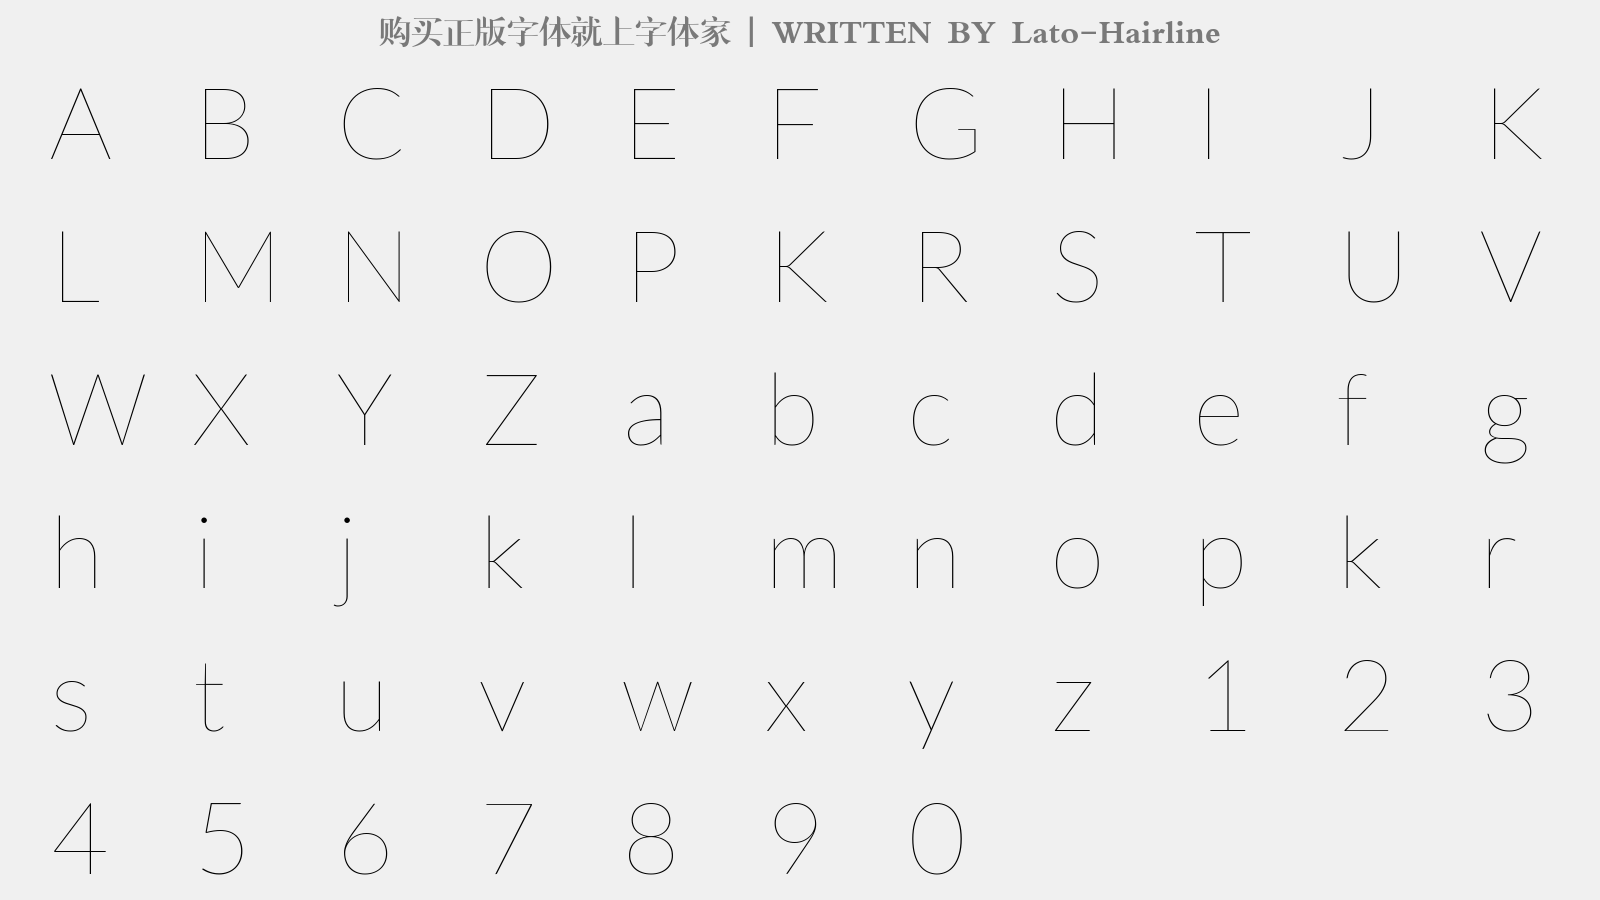 Lato-Hairline - 大写字母/小写字母/数字